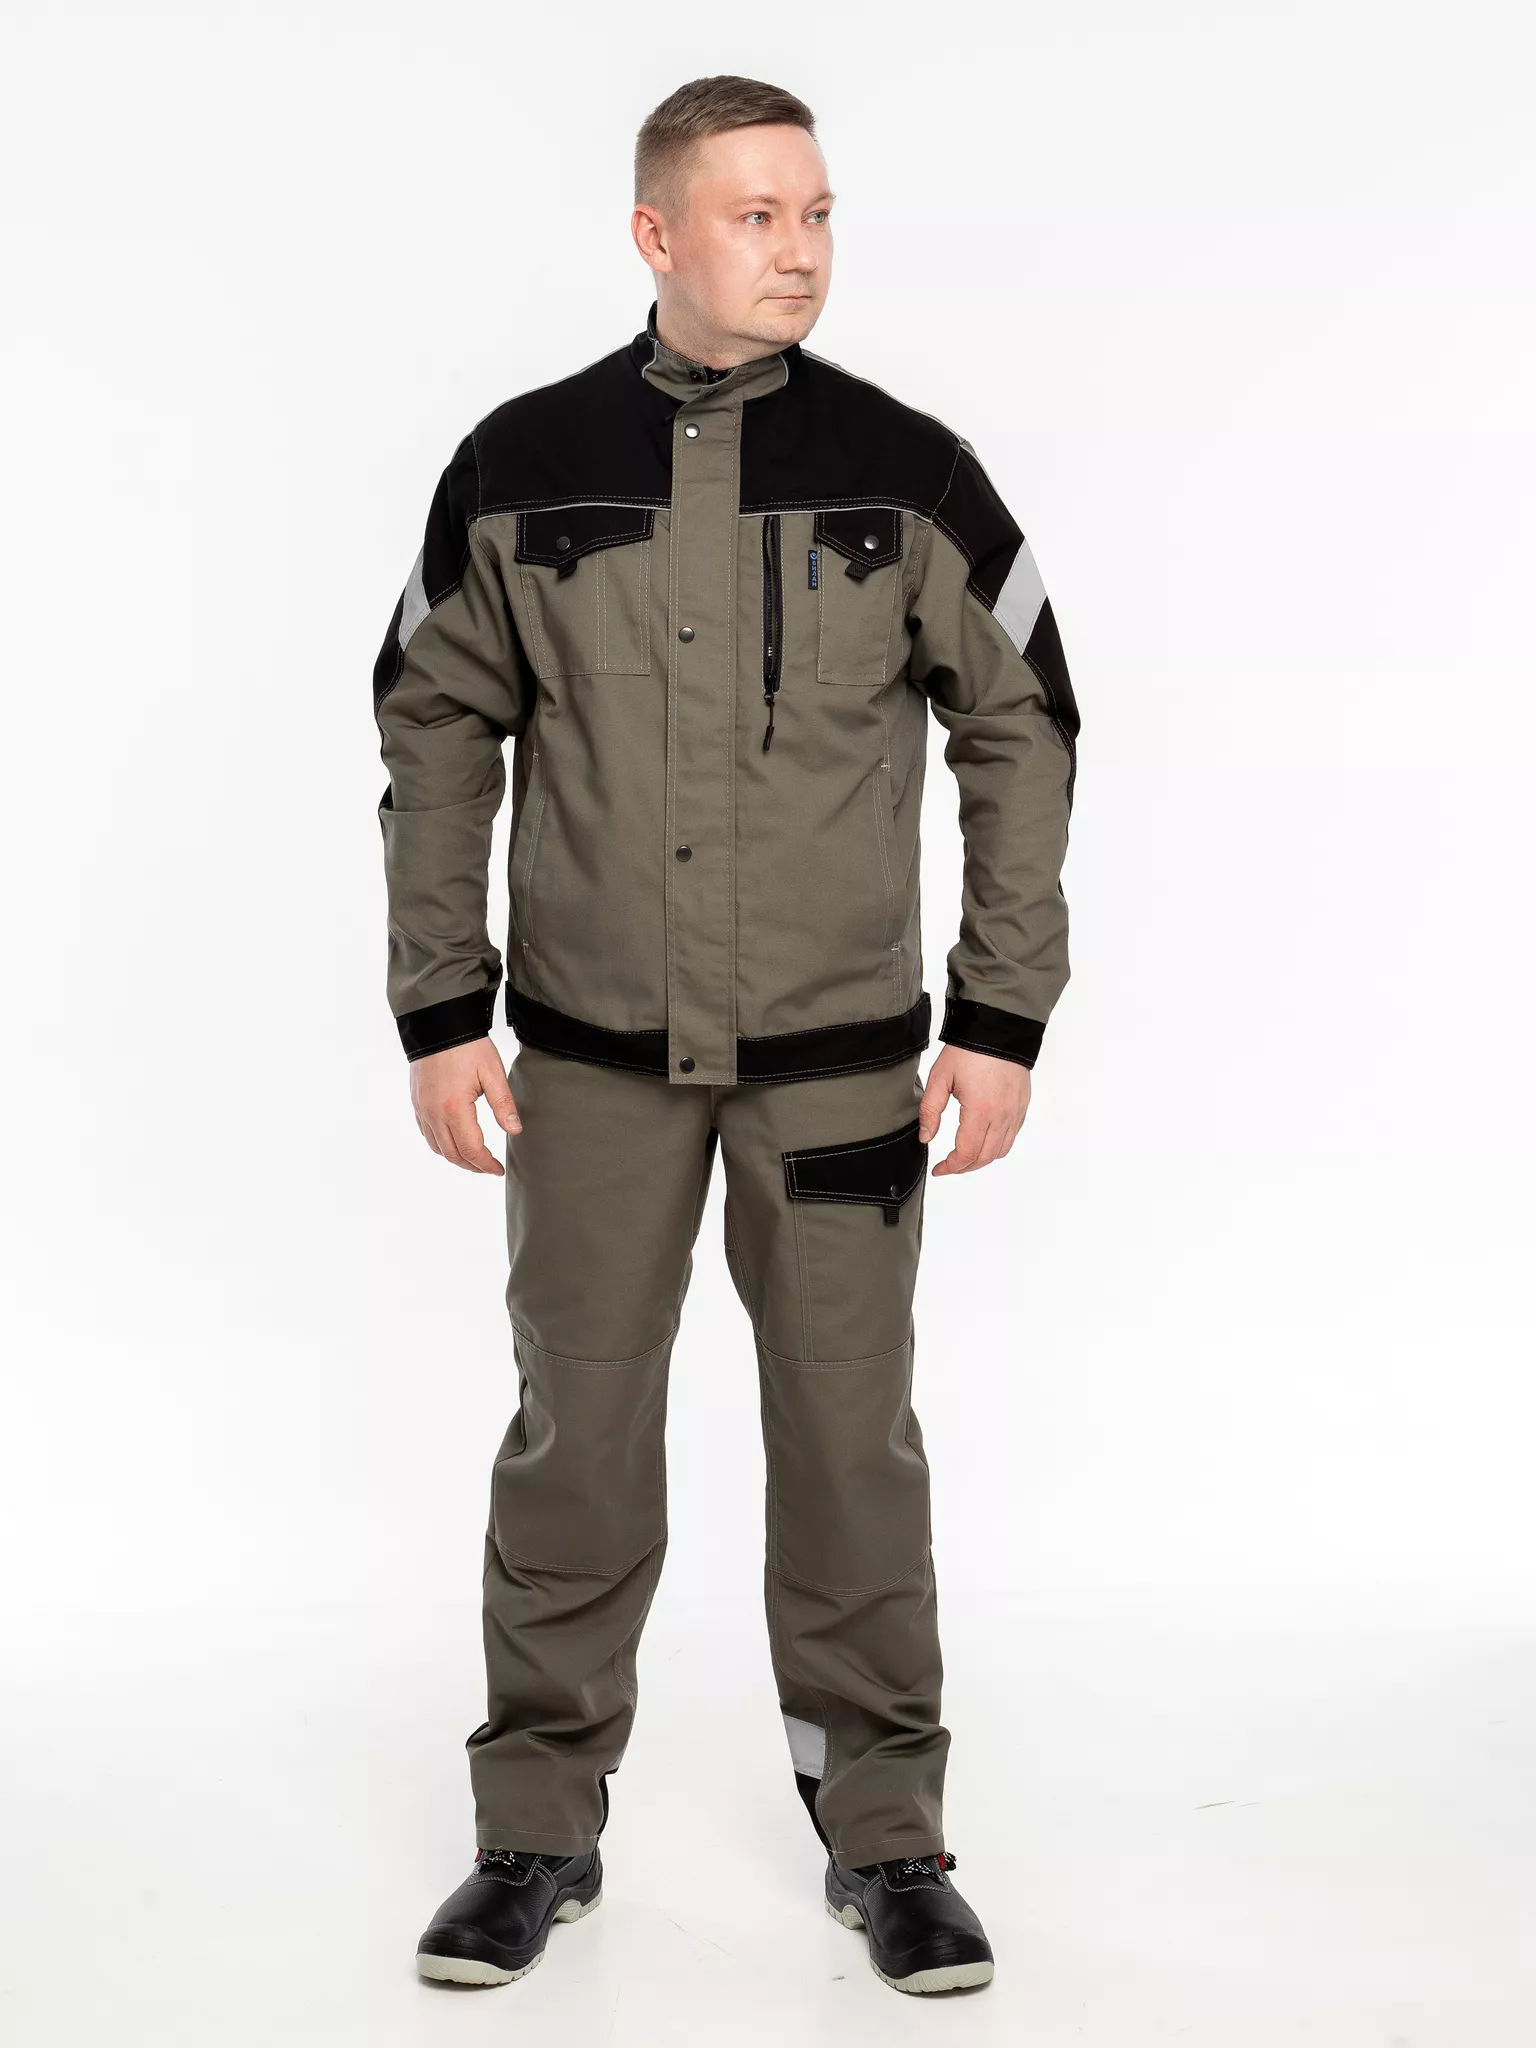 Куртка рабочая КР.366 р.48-50, рост 182-188 (цвет оливковый, отделка черная.СОП)